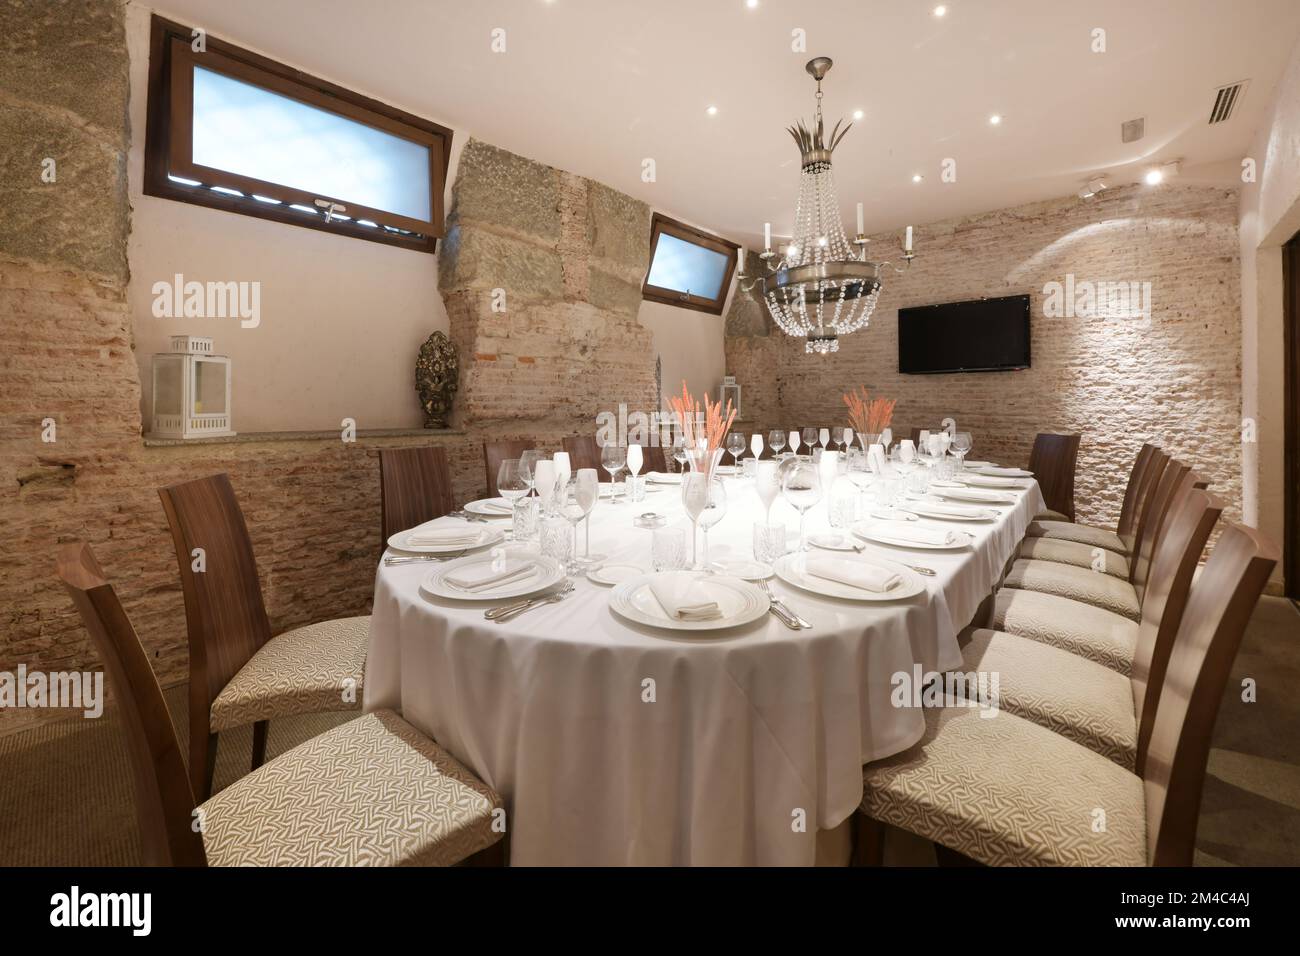 Table de salle à manger d'un restaurant avec service avec des verres et des assiettes et une lampe décorative au plafond Banque D'Images